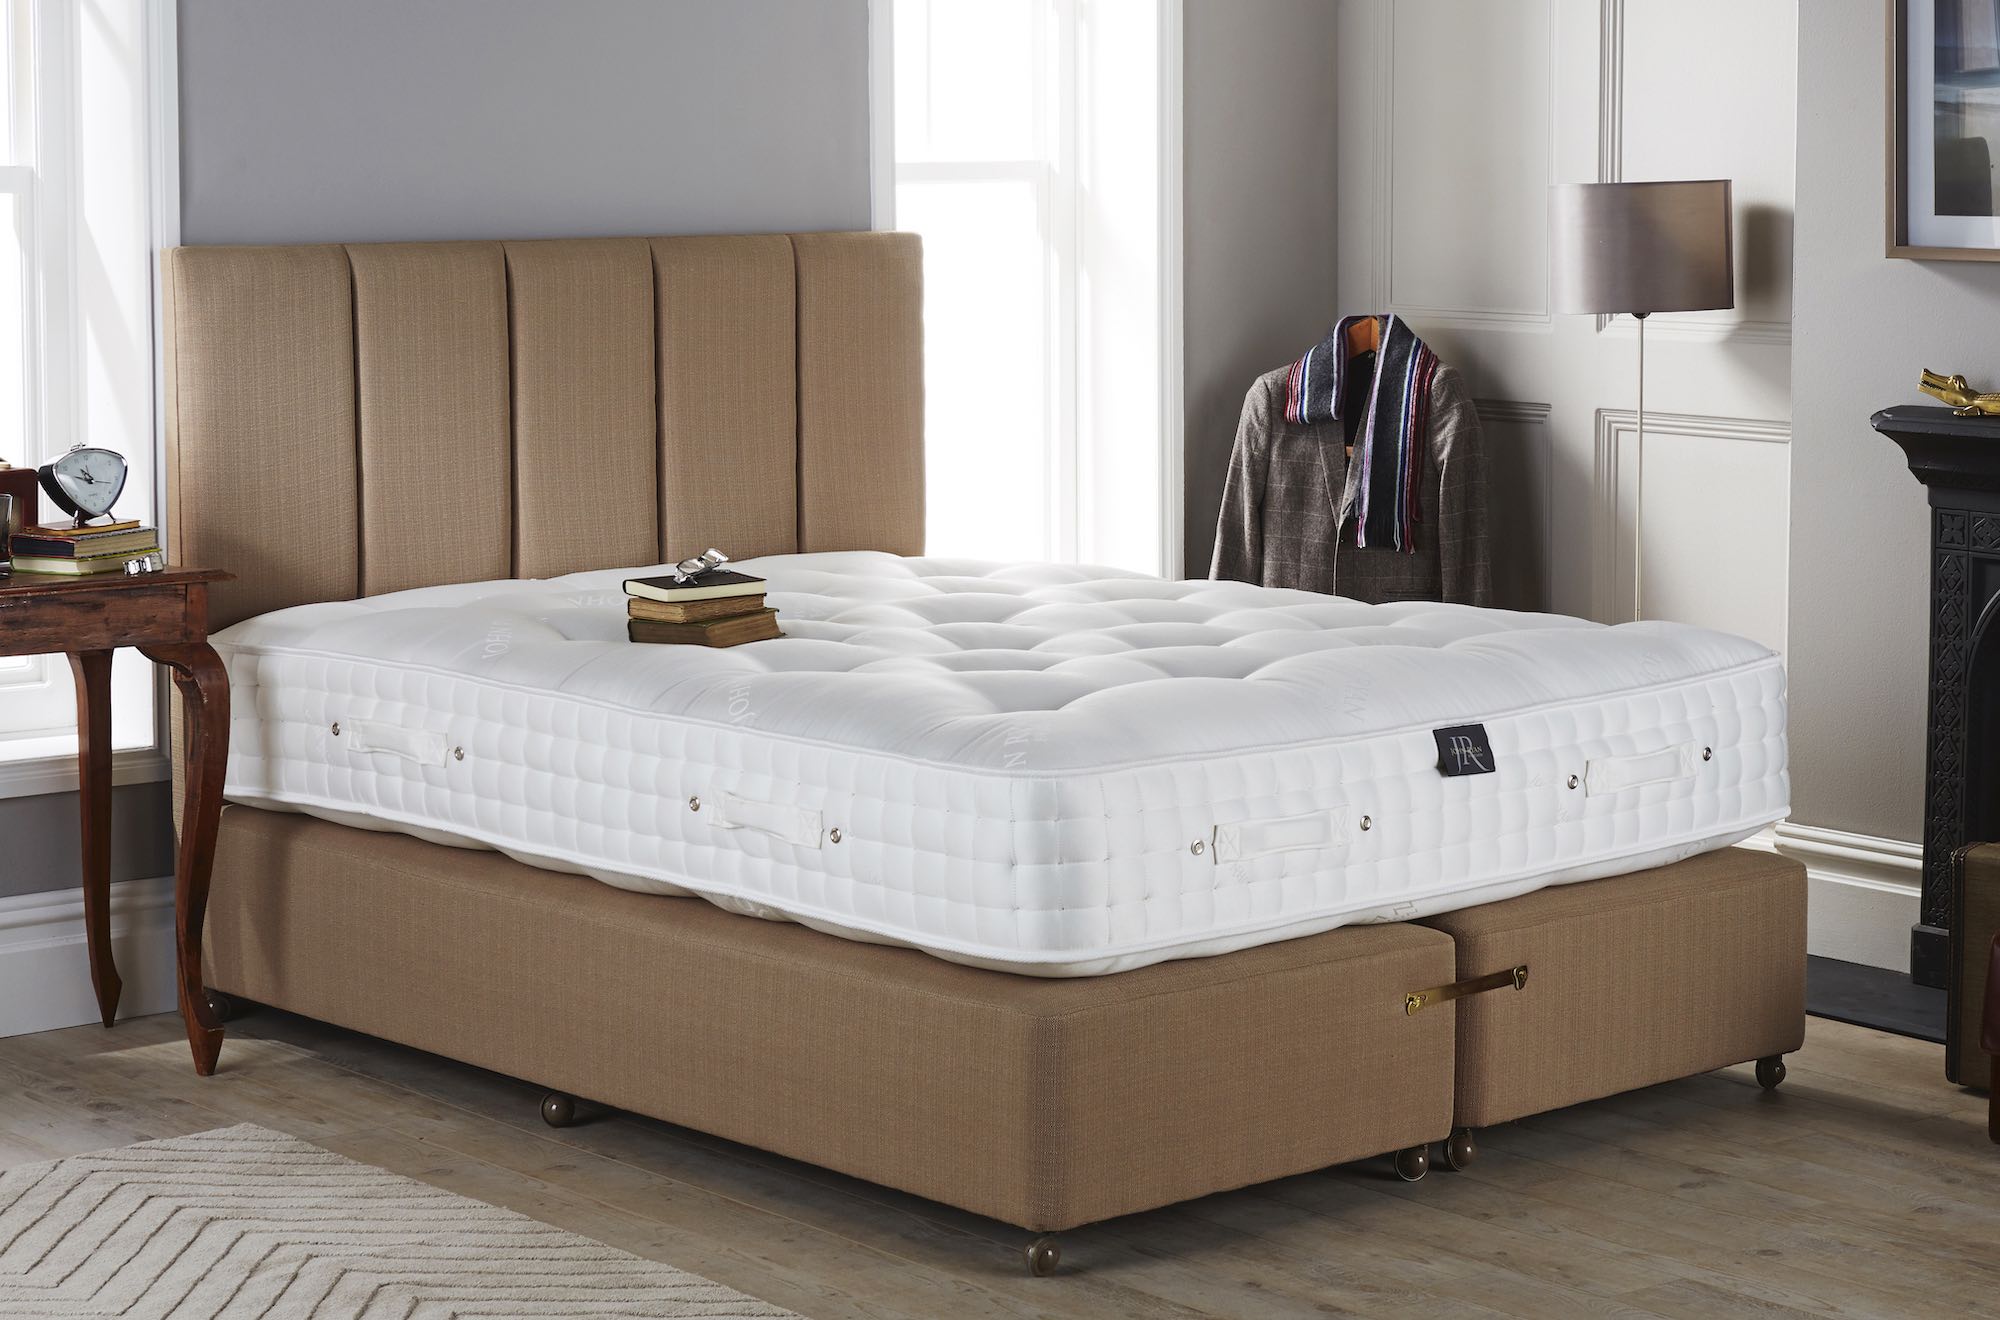 A kingsize mattress in a bedroom